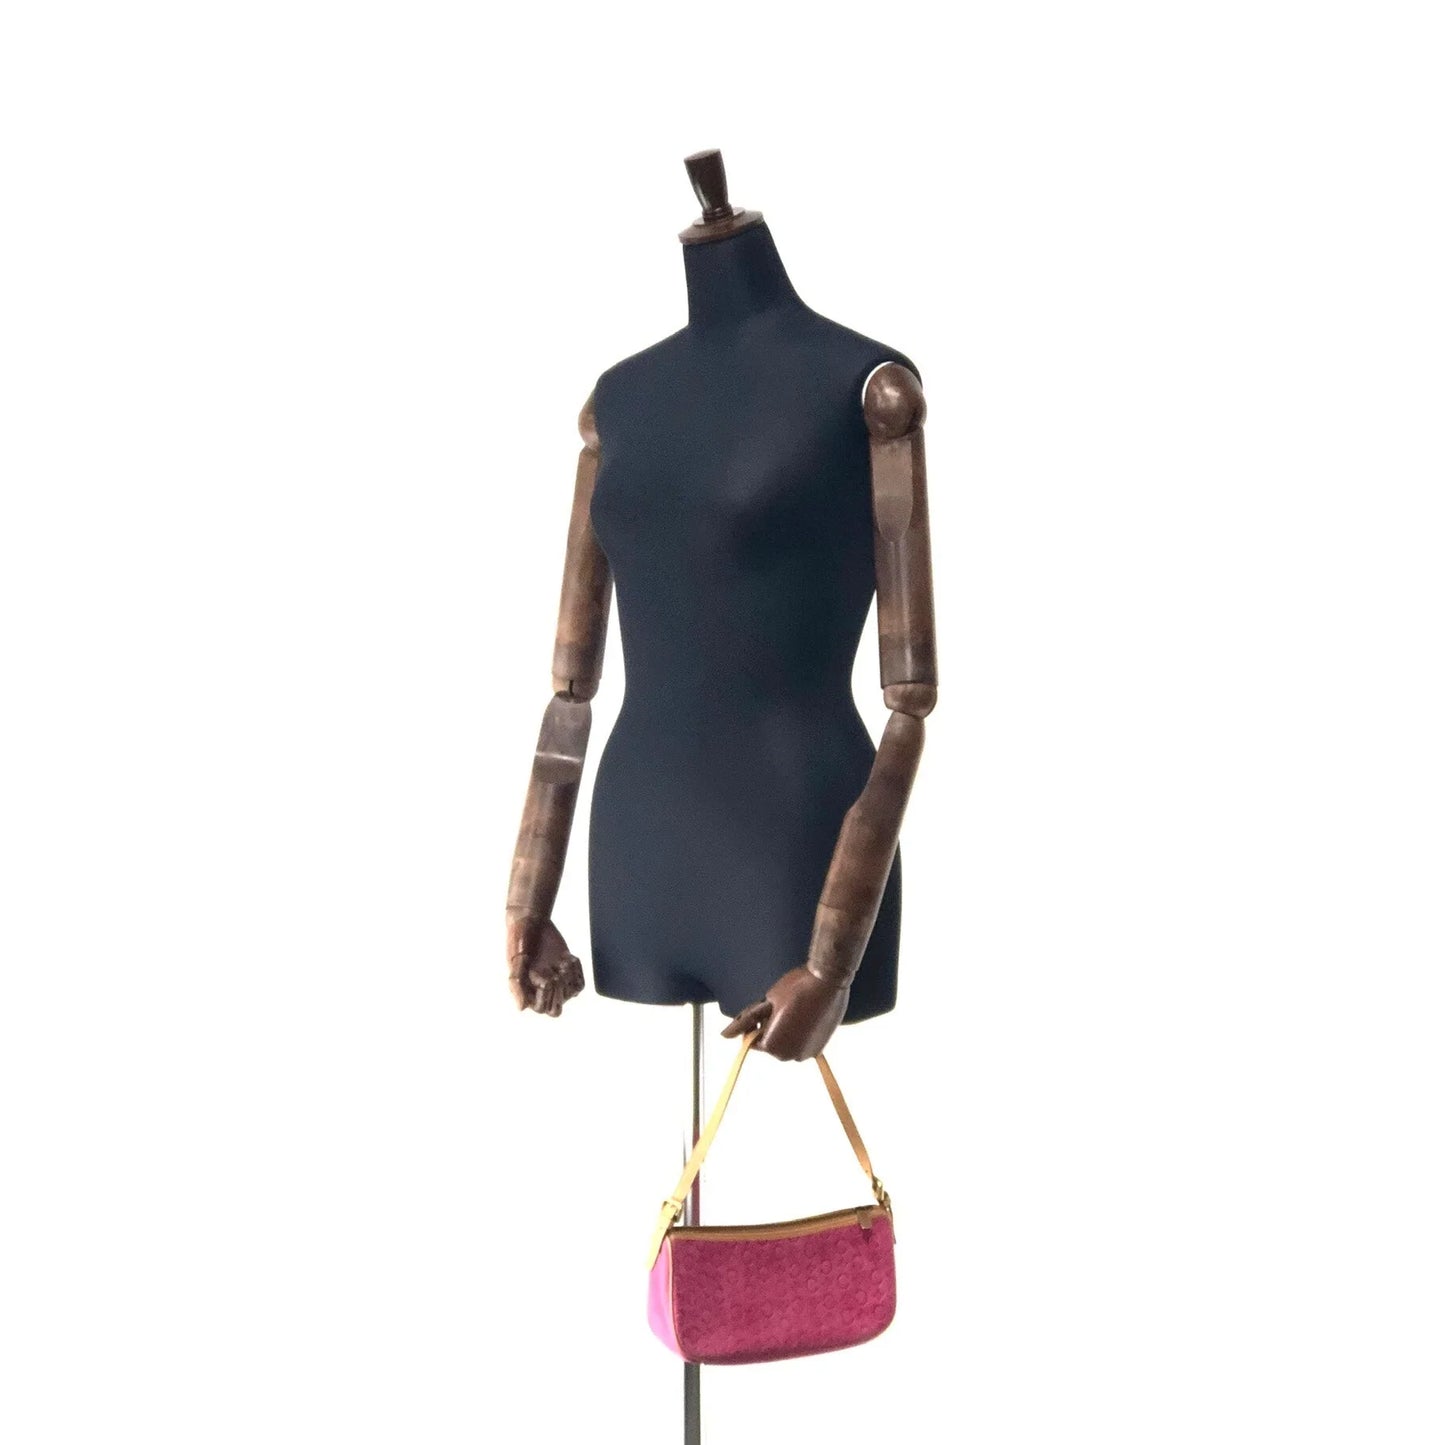 CELINE C Macadam Suede Leather Accessory Pouch Hobo Mini Bag Shoulder Bag Pink Camel vintage Old Celine ysm4yh